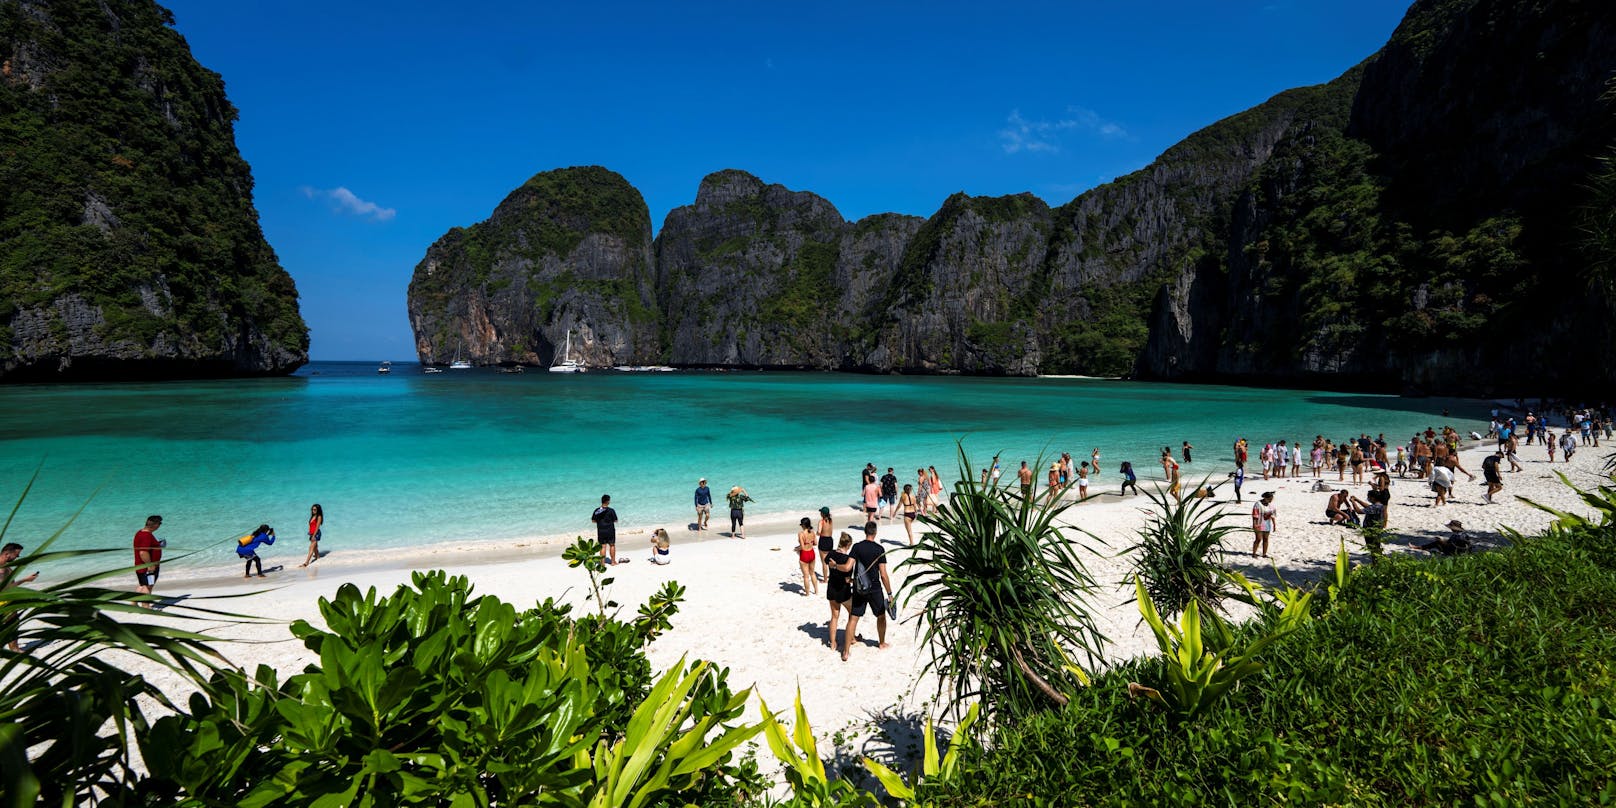 Thailand hat seine strengen Einreiseregeln für geimpfte Touristen gelockert. Dadurch erhofft man sich ein deutliches Plus bei den Urlaubsgästen.